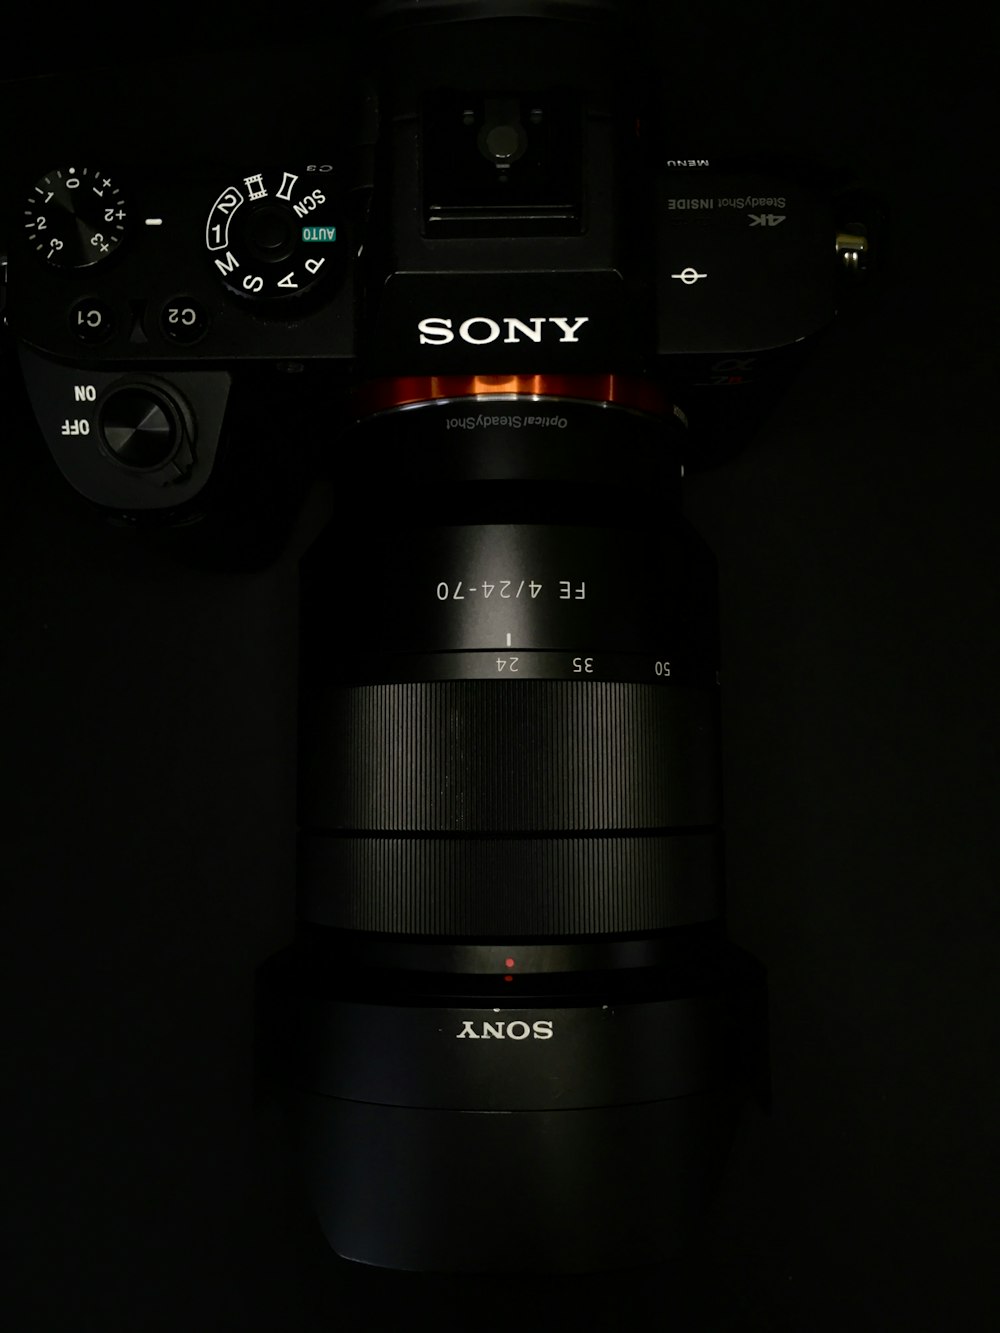 Sony Camera - chất lượng hình ảnh tuyệt vời luôn được đảm bảo với những sản phẩm máy ảnh Sony. Hãy để những snapshots của bạn trở nên sống động và rực rỡ bằng cách sử dụng những sản phẩm máy ảnh chất lượng cao từ Sony.